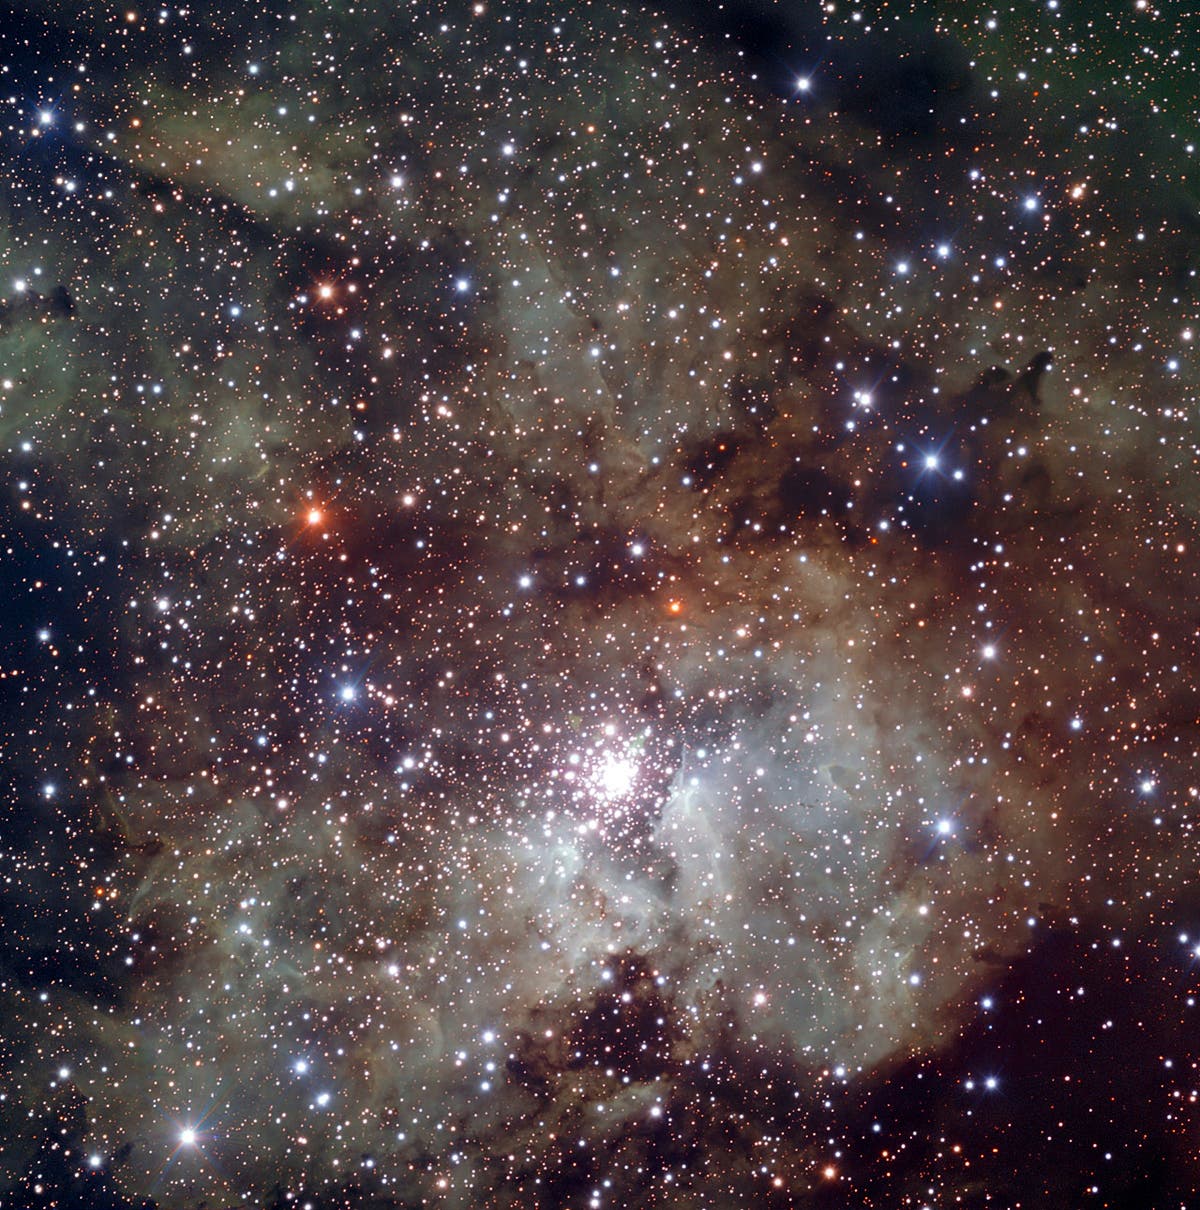 Die Sternentstehungsregion NGC 3603 im Sternbild Carina